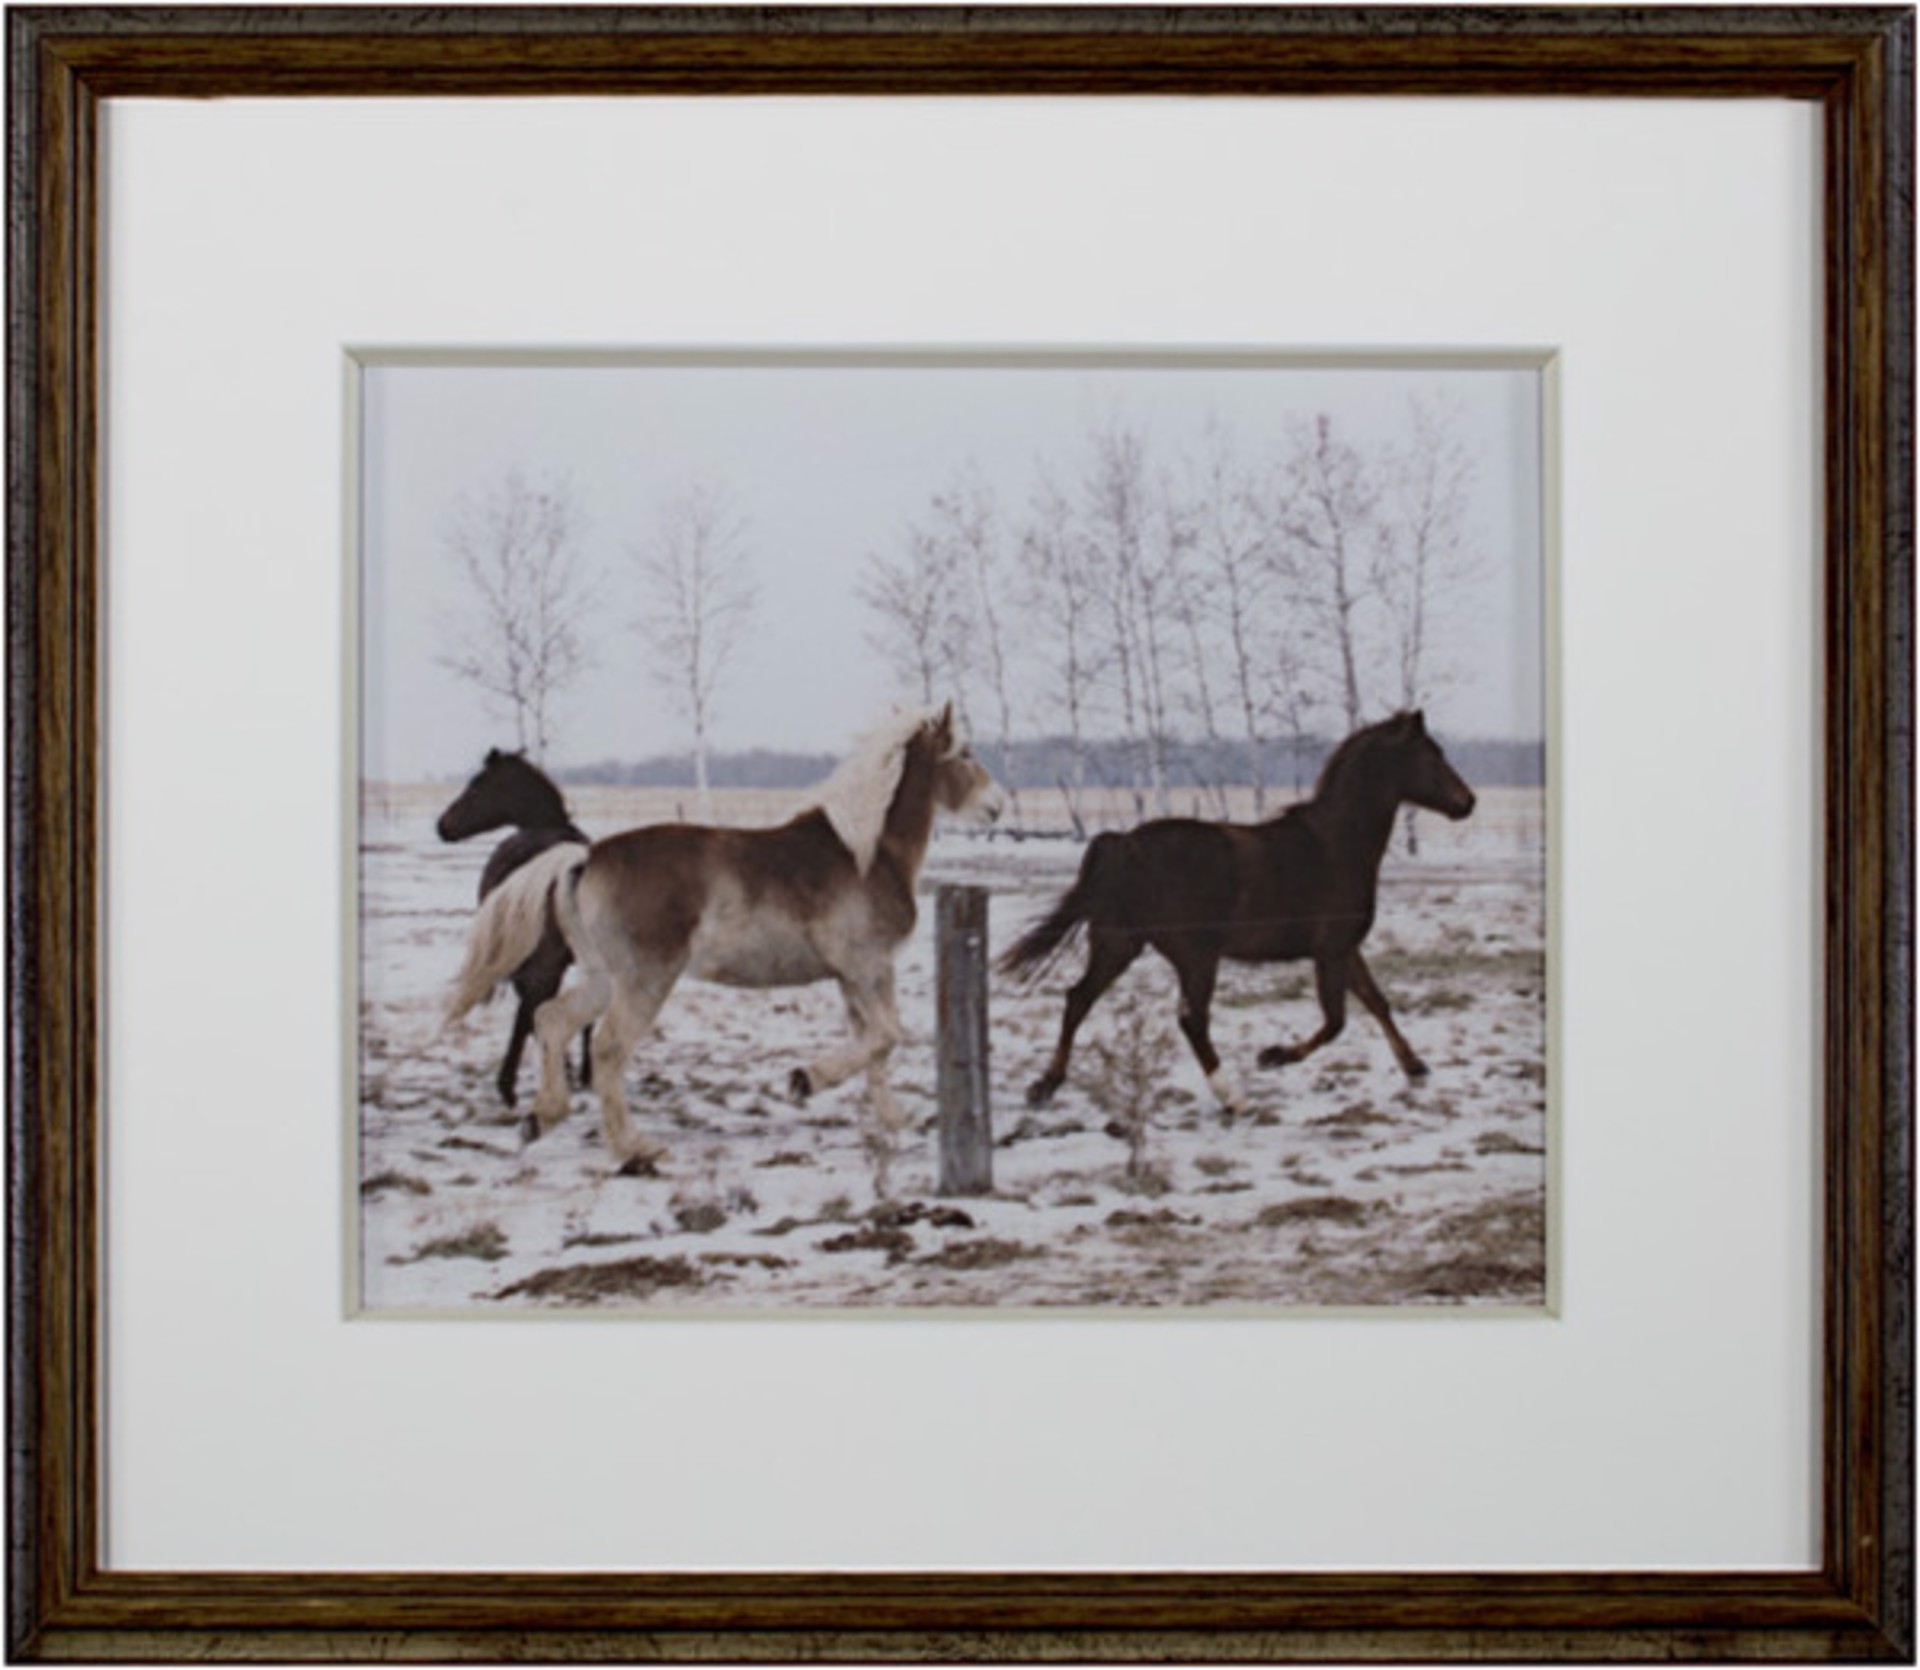 Jacob's Horses, Ashland, WI by Jacob Obletz